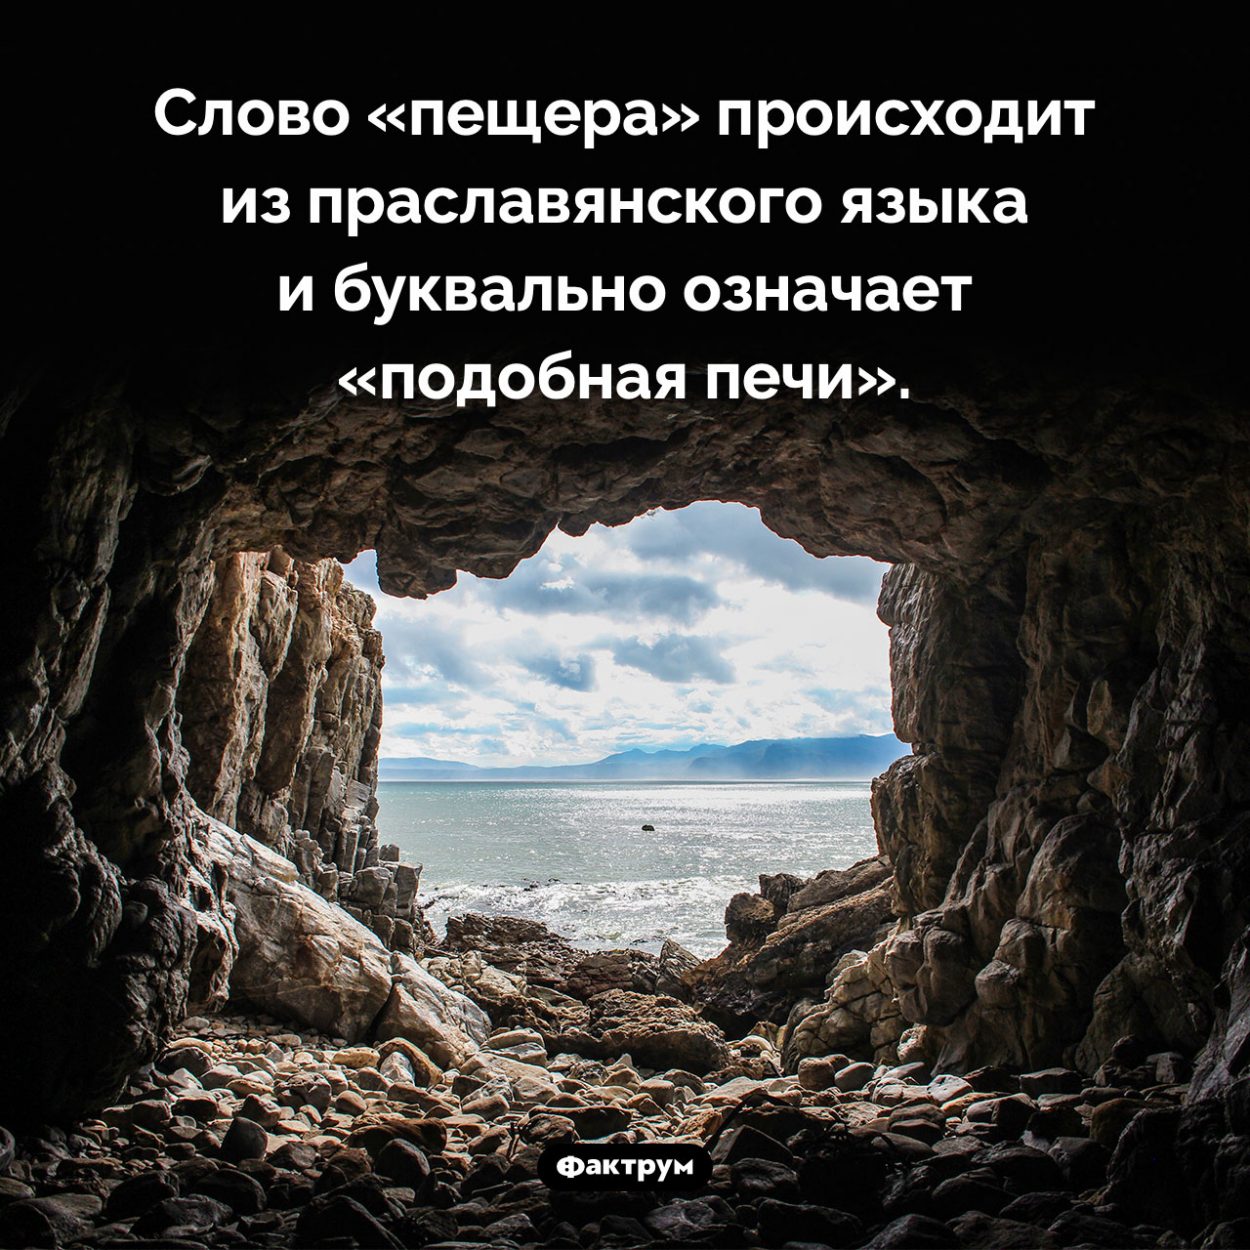 Происхождение слова «пещера». Слово «пещера» происходит из праславянского языка и буквально означает «подобная печи».